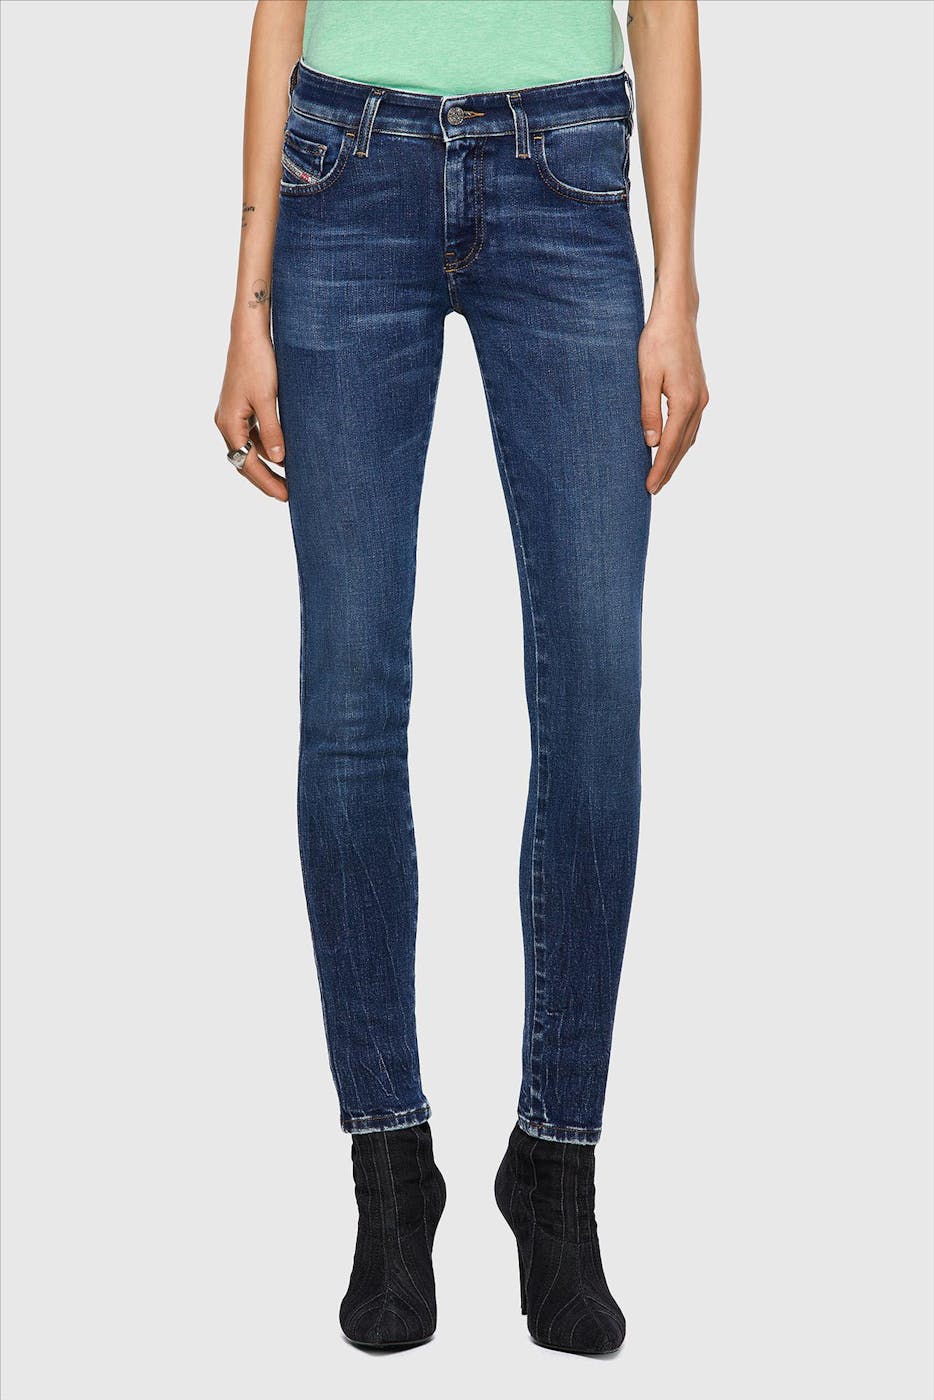 Diesel - Blauwe Slandy skinny jeans